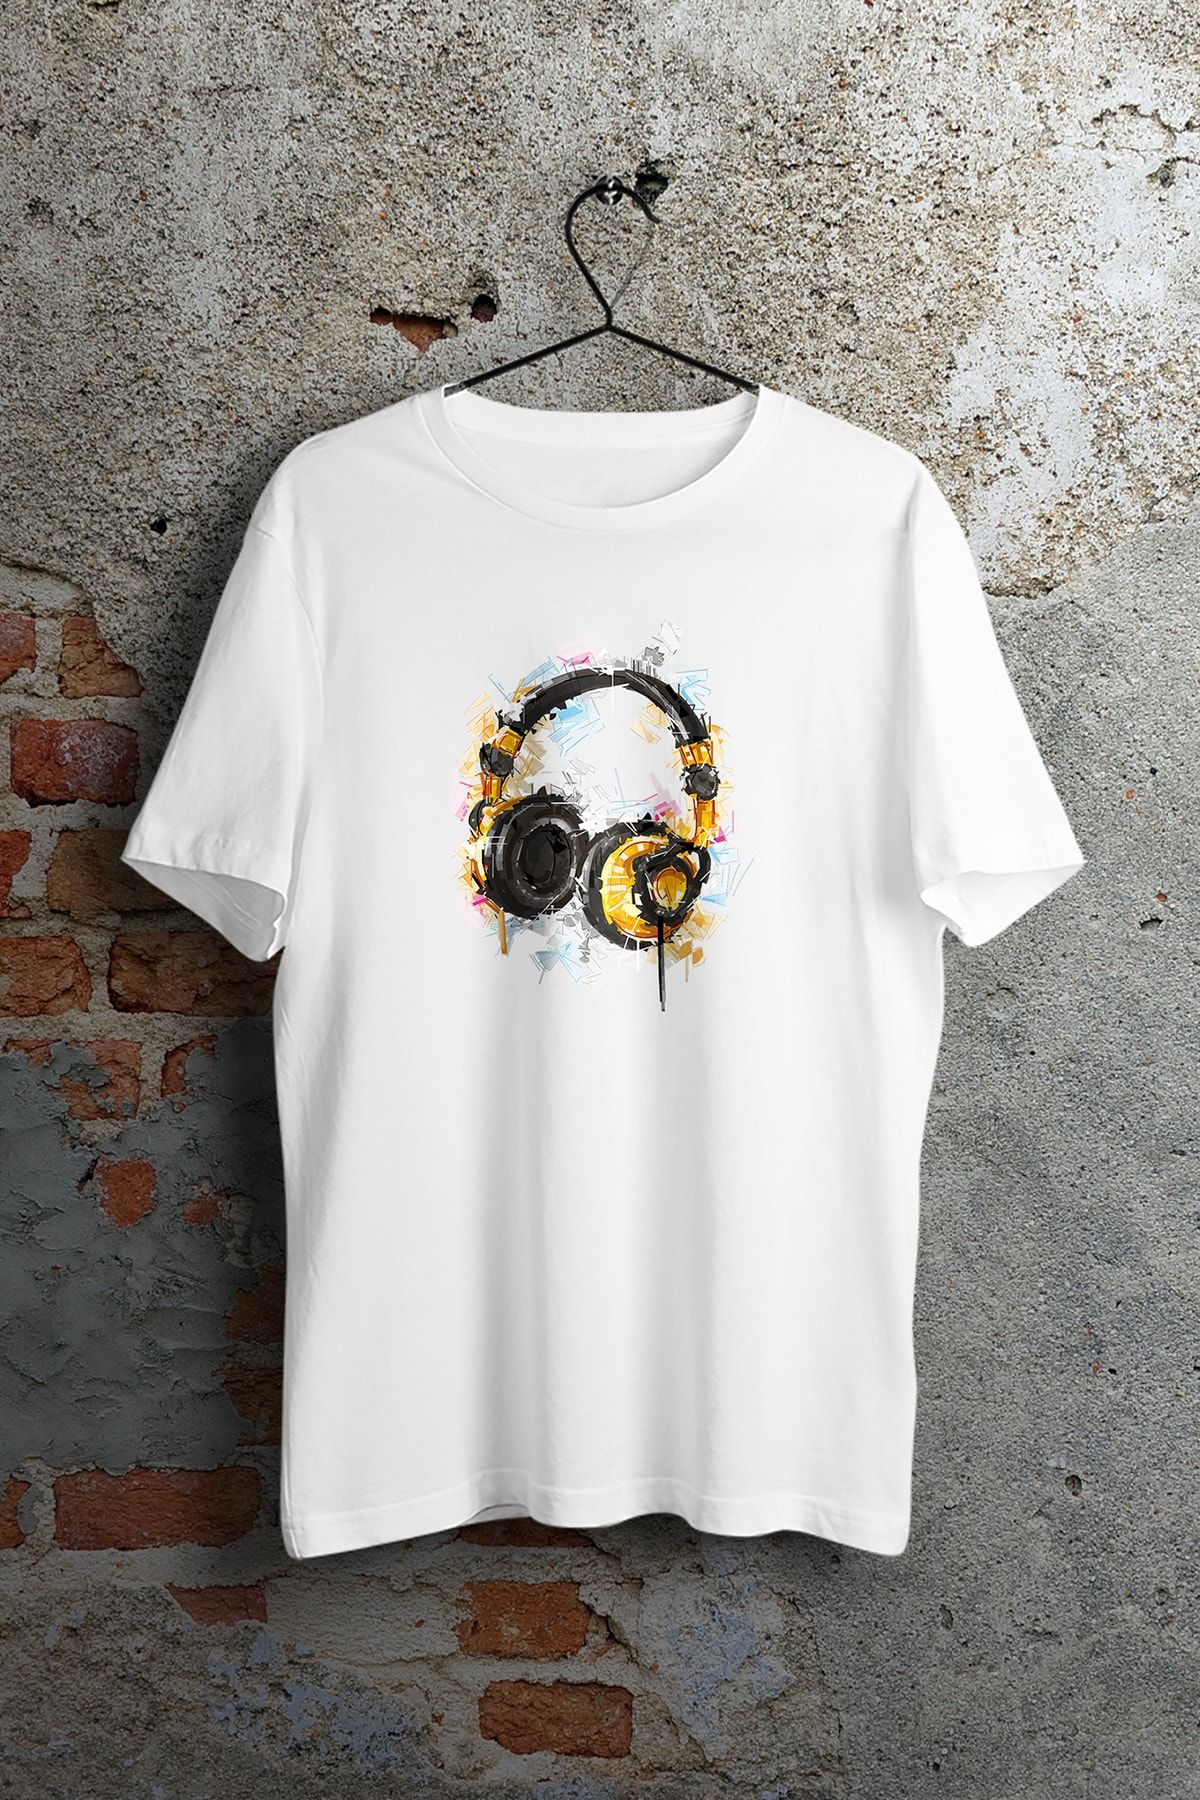 WePOD Dj Headphone Mirror Baskılı Tişört Baskılı Beyaz Kısa Kollu Unisex Tişört